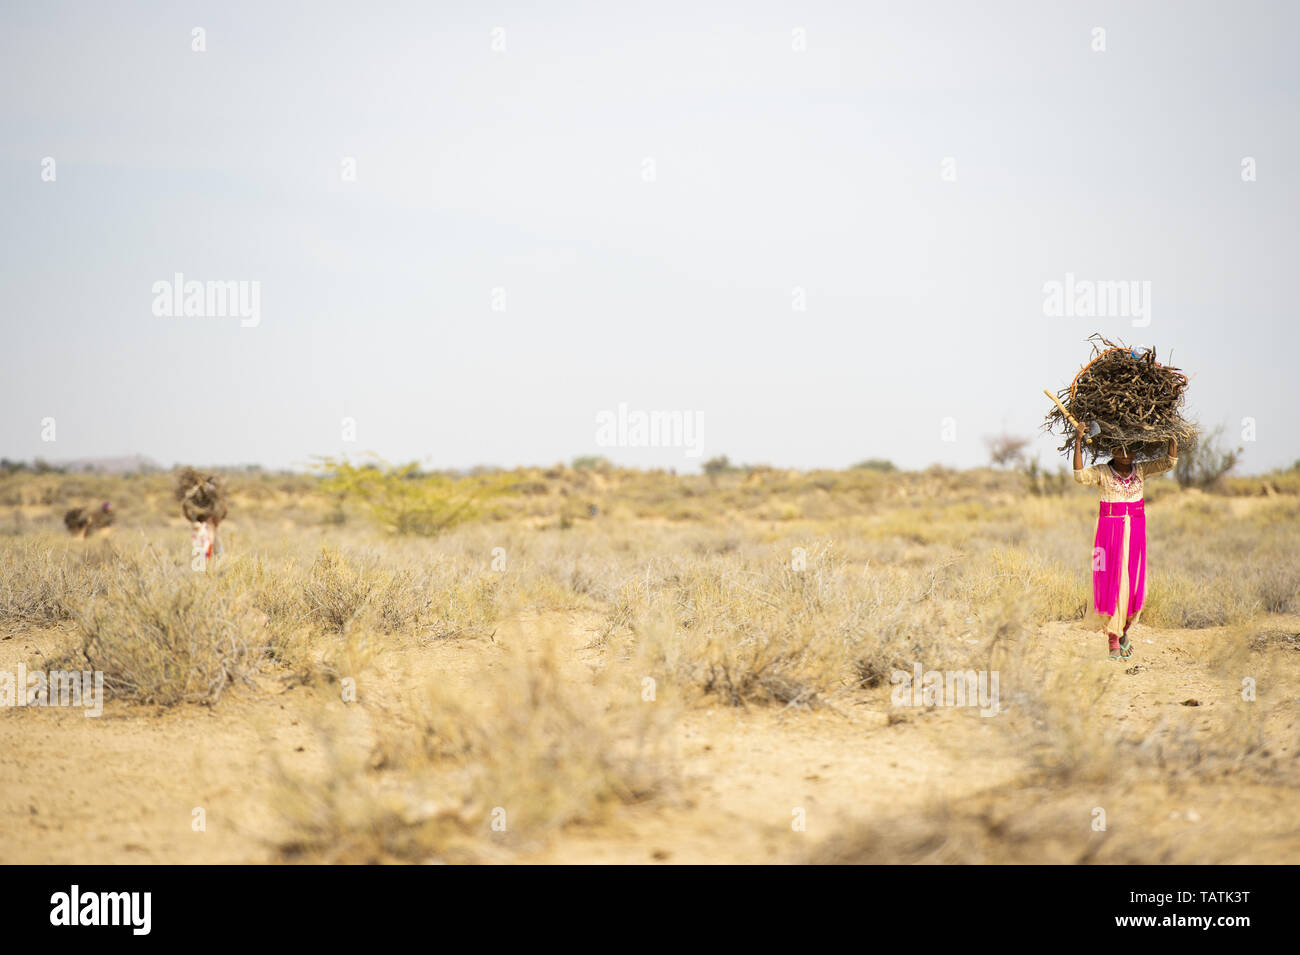 Los niños y jóvenes pobres son pesadas racimos de madera seca sobre sus cabezas en el medio del desierto de Thar, Jaisalmer, Rajasthan, India. Foto de stock